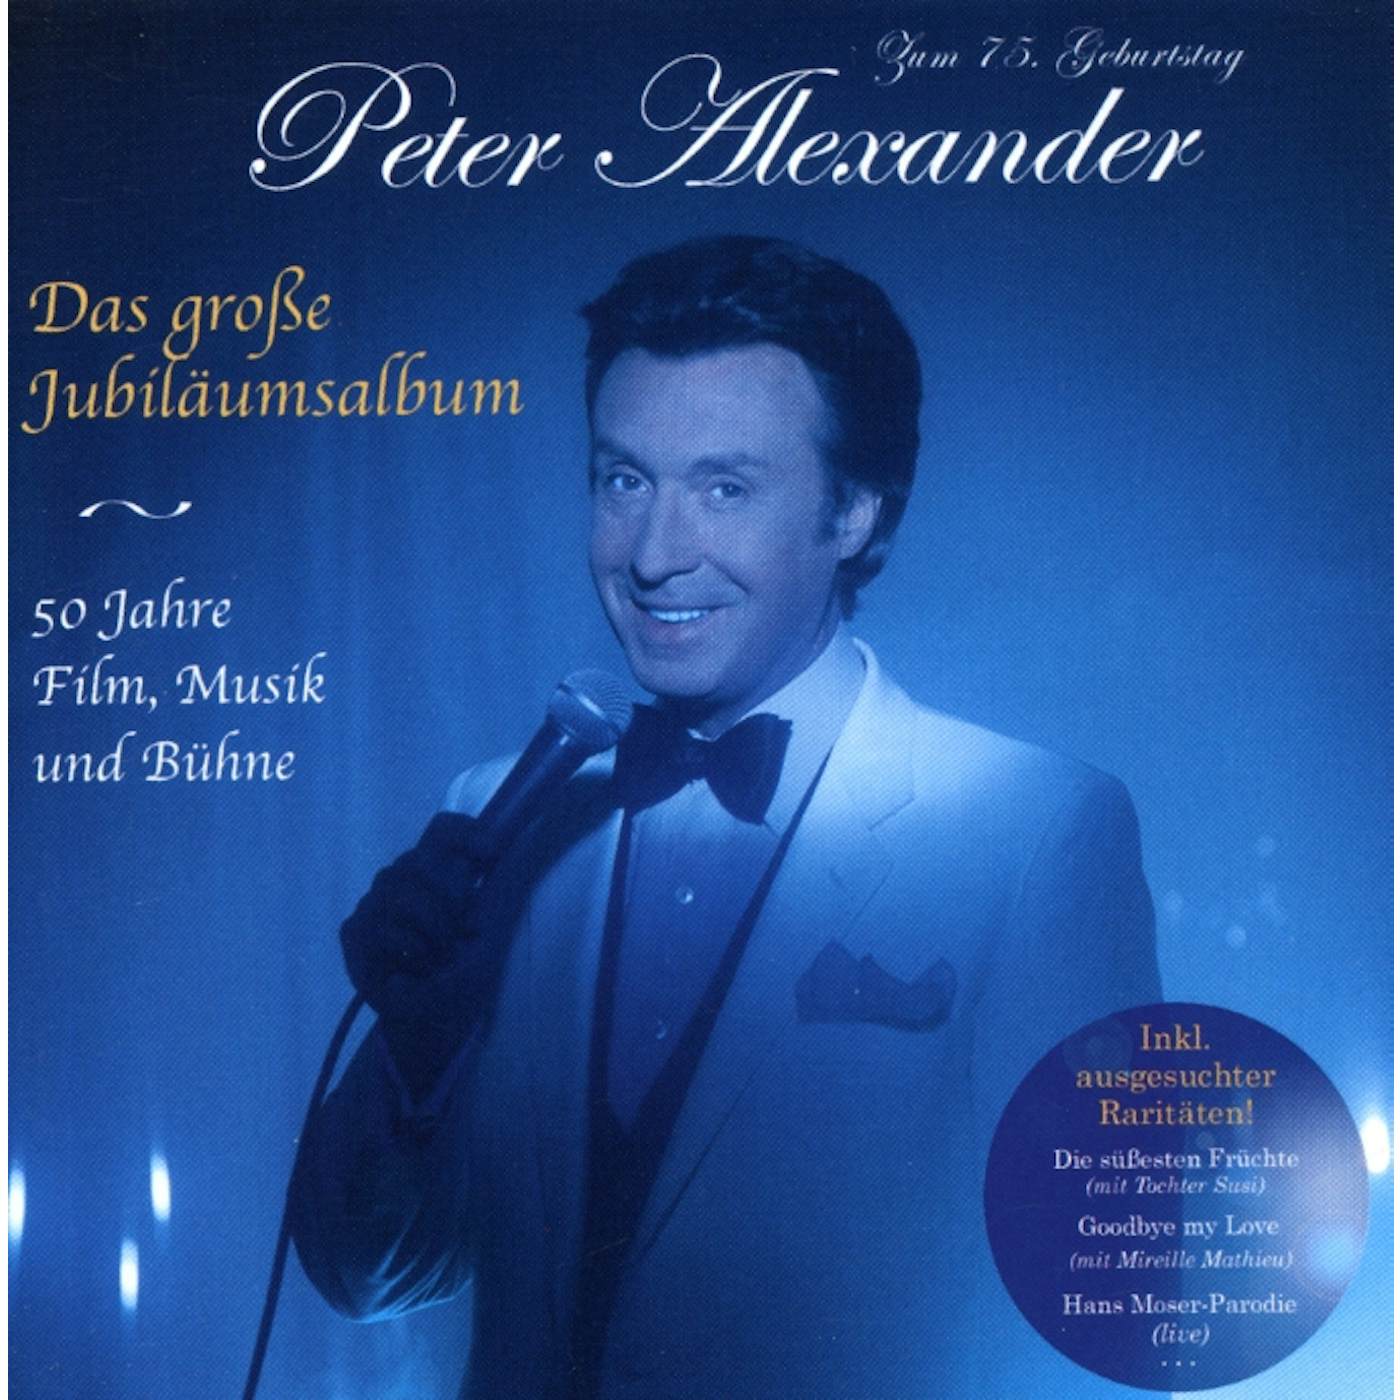 Peter Alexander DAS GROSSE JUBILAUMSALBUM 50 JAHRE FILM CD